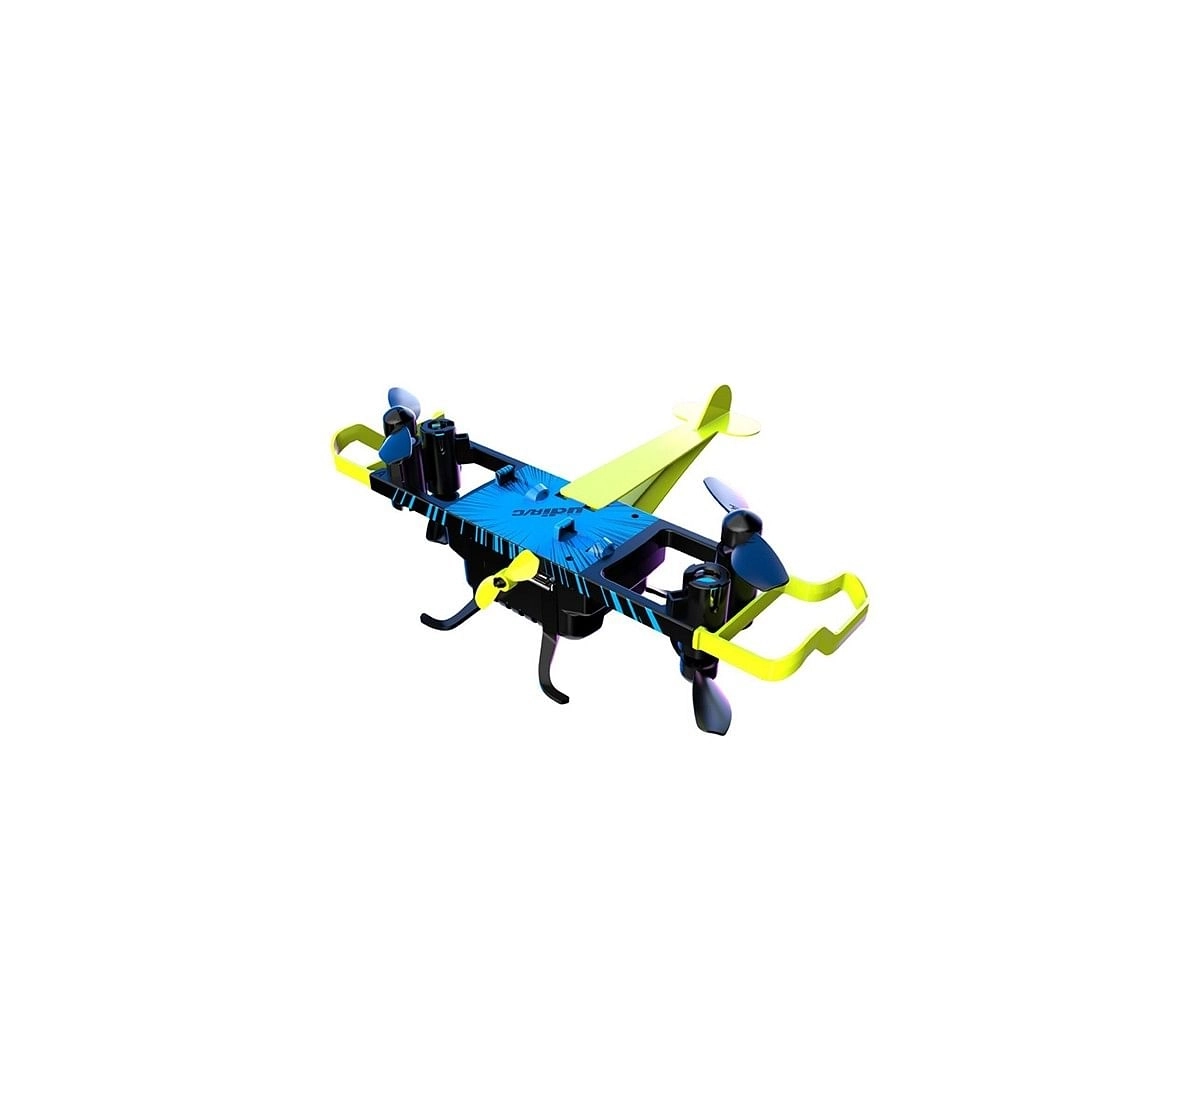 Sirius Toys Udirc U64 Multi Flying Drone Remote Control Toys for Kids age 14Y+ 